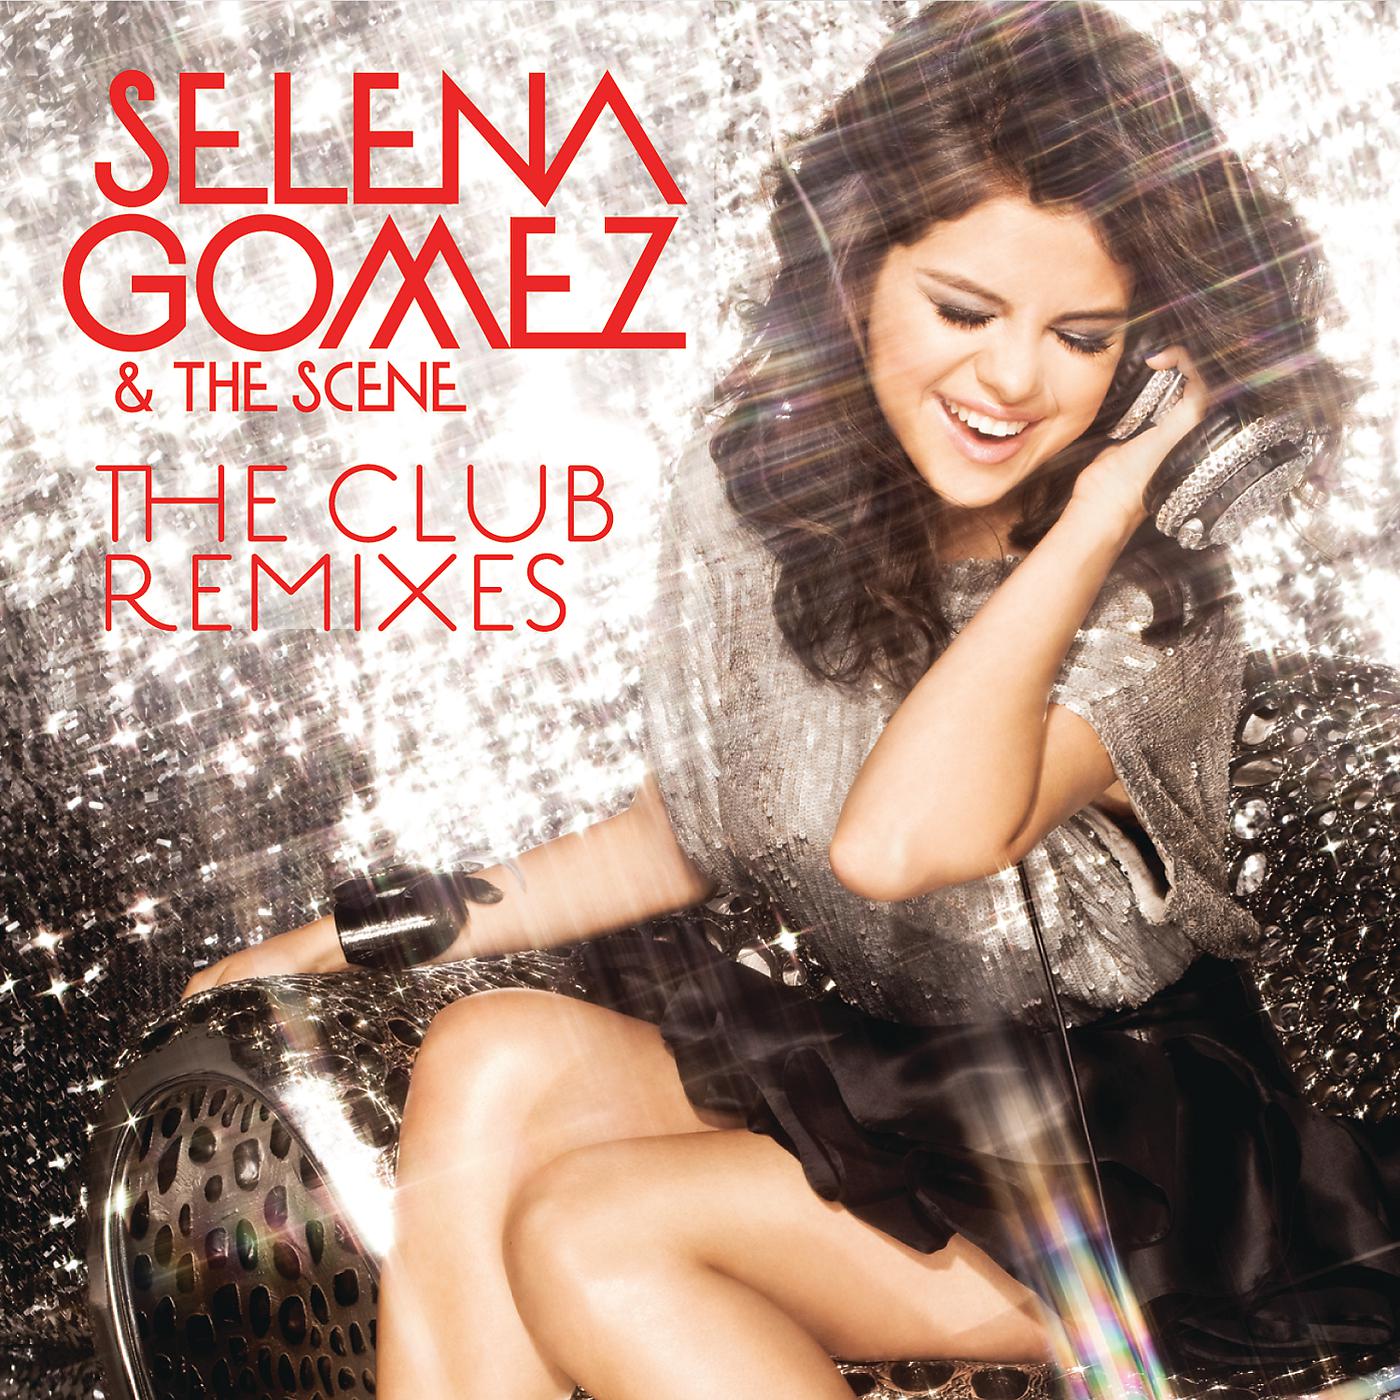 Альбом селены. Обложки альбомов Селены Гомес. Selena Gomez & the Scene. Selena Gomez & the Scene обложка.